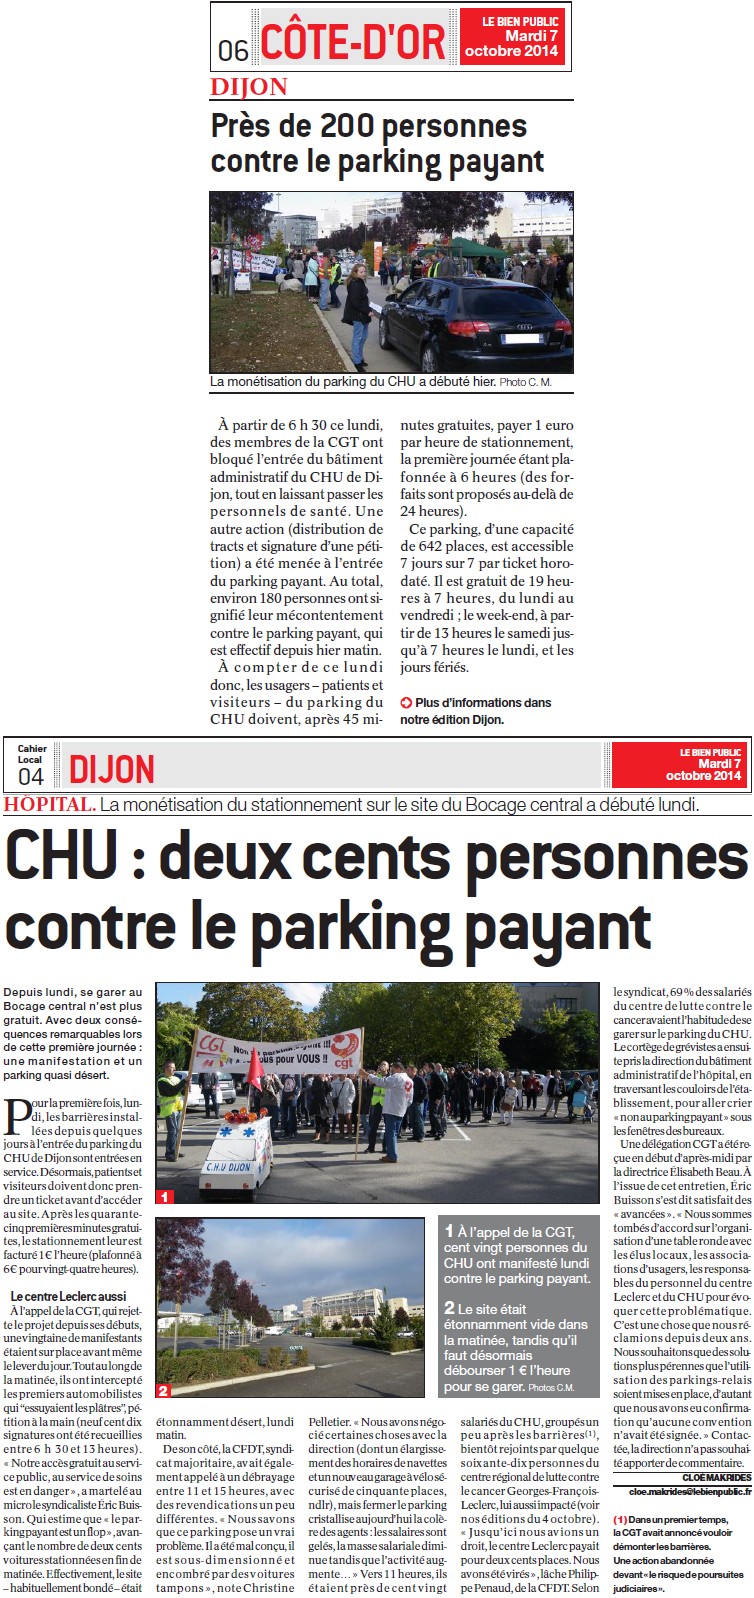 CHU de Dijon : Parking payant : Grève le 6 octobre (Infos-Dijon) + 200 personnes contre le parking payant (Bien Public) + Même pas honte (Humanité) + Parking payant, premier bilan (Bien Public) 14101605164317936712617224